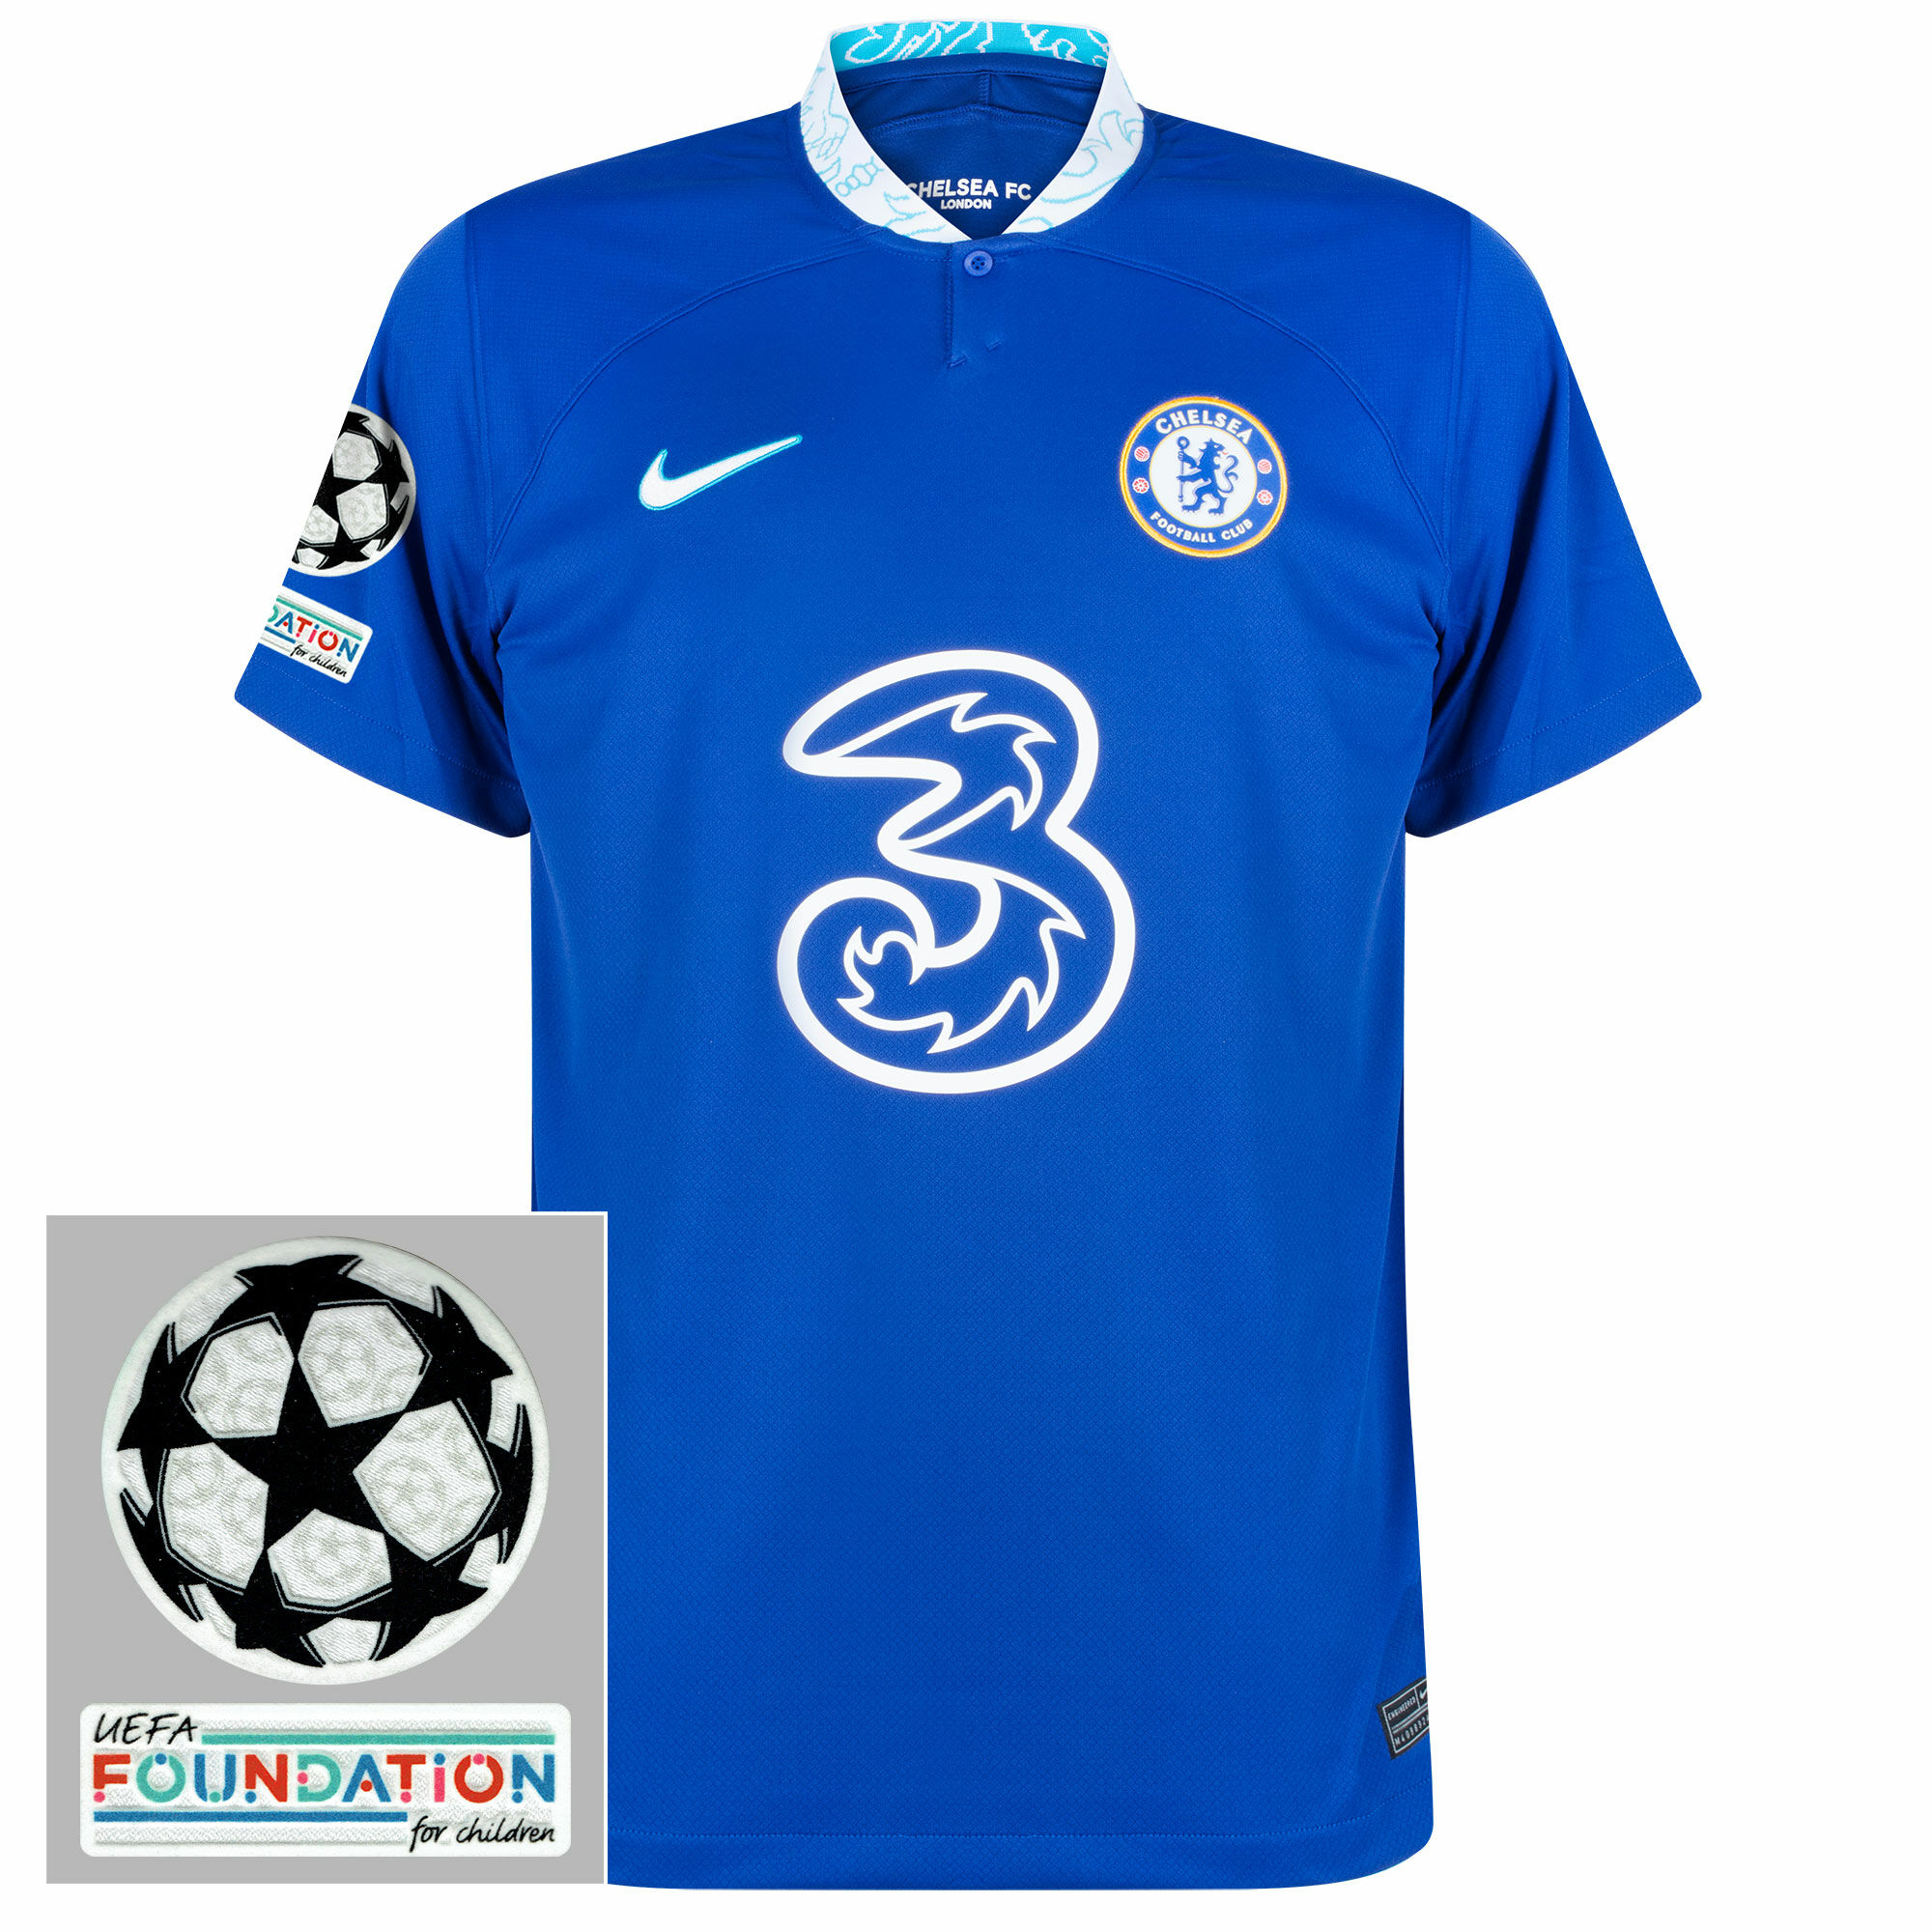 Chelsea - Dres fotbalový - loga UCL a Foundation, domácí, sezóna 2022/23, modrý